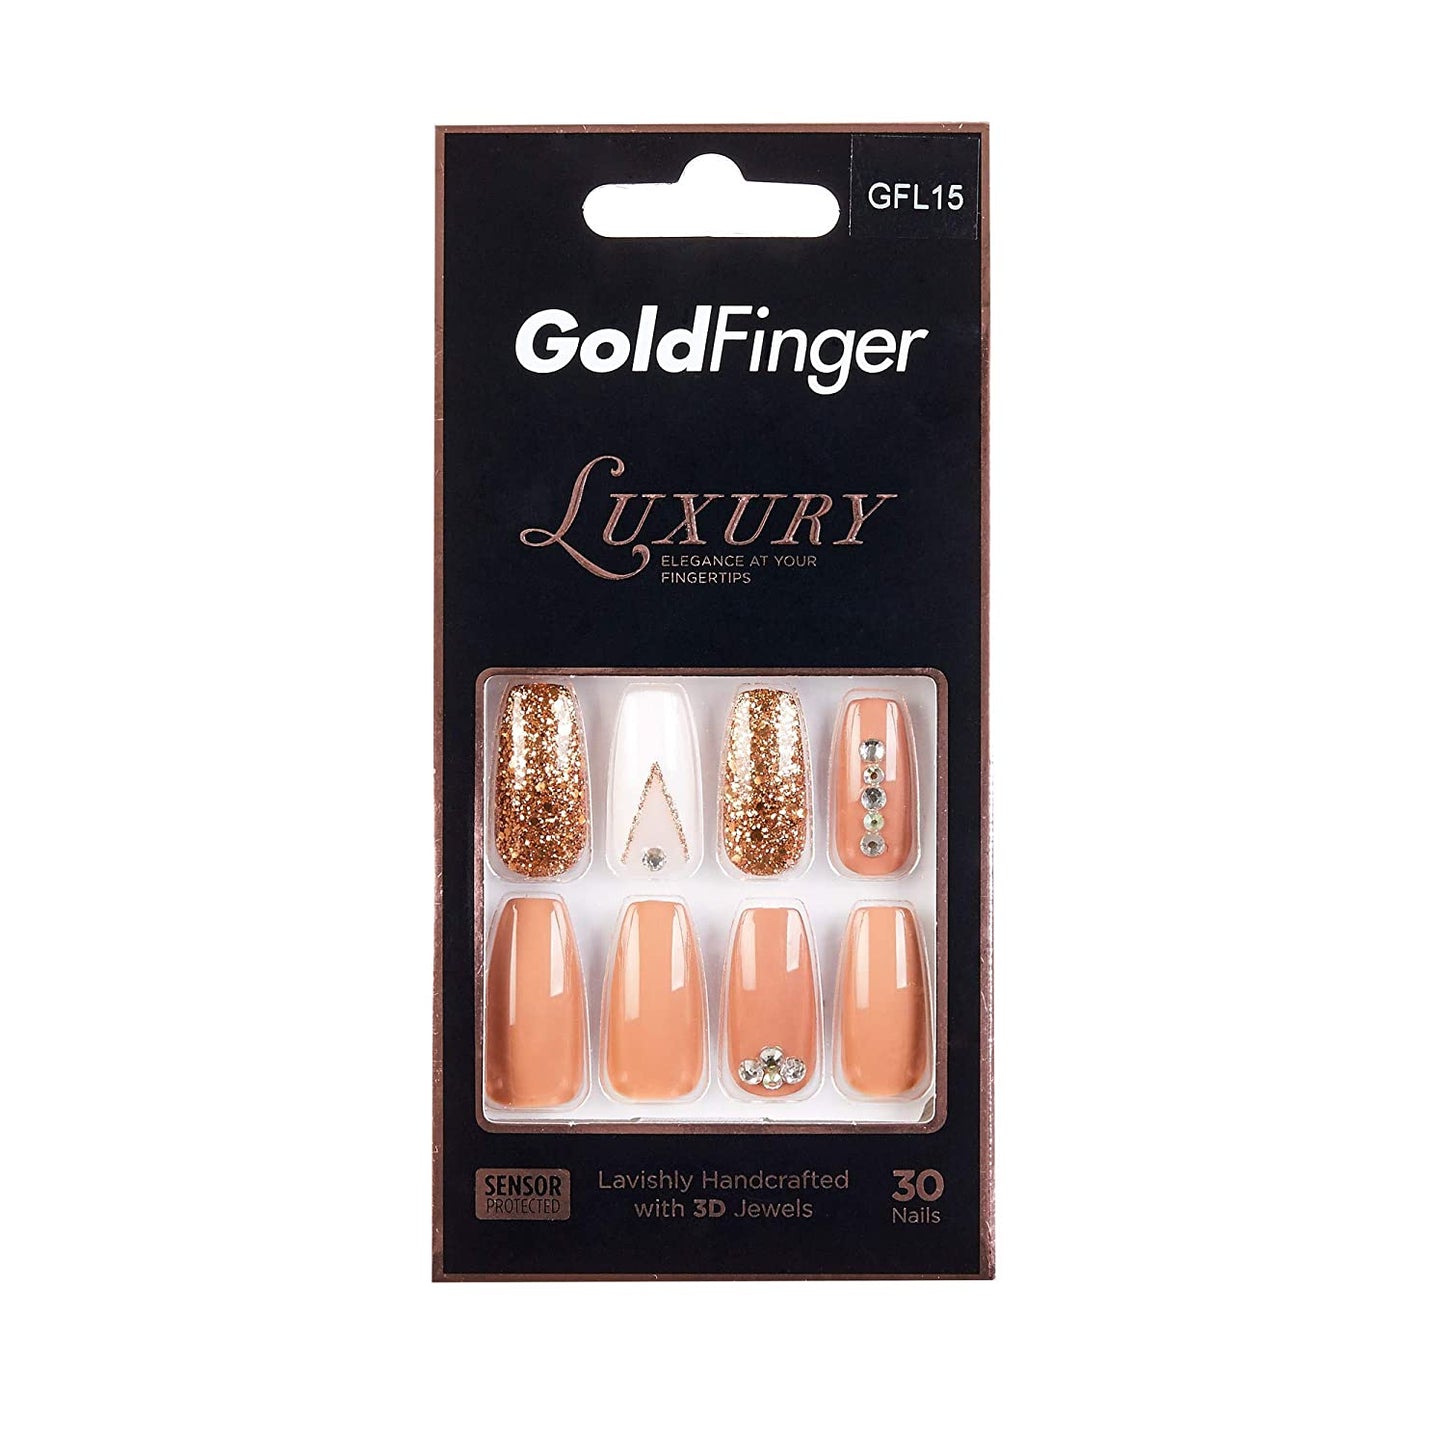 KISS GoldFinger Luxury Nails GFL15